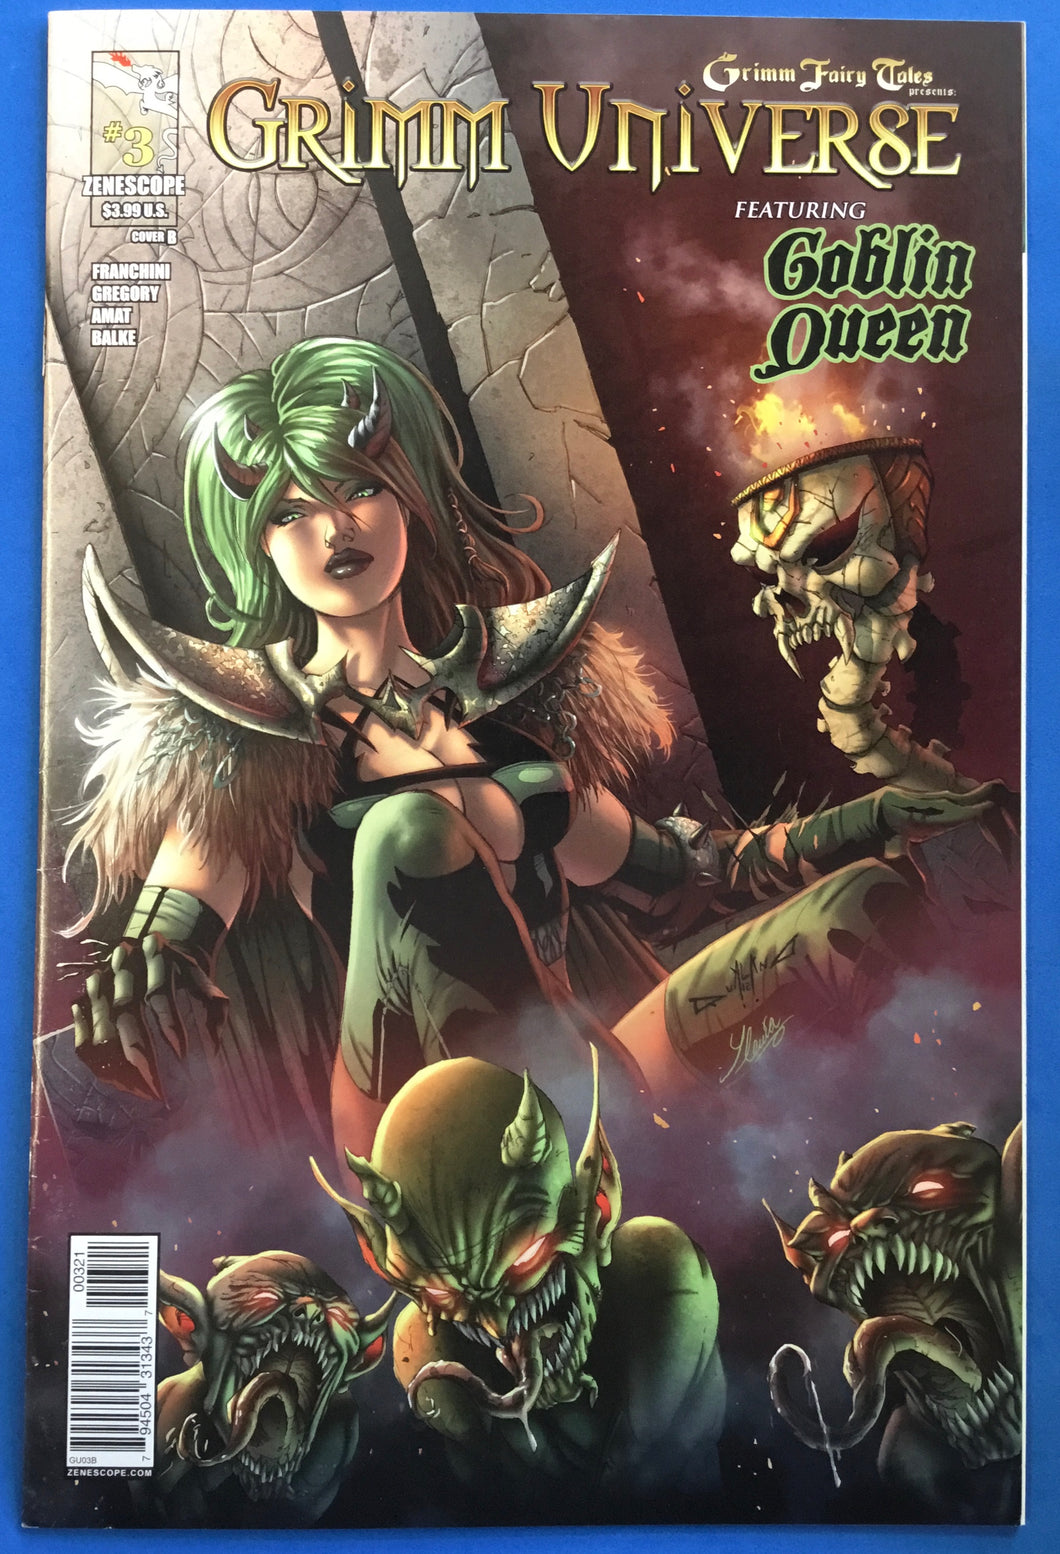 Grimm Fairy Tales Presents Grimm Universe Feat. Goblin Queen No. #3B 2013 Zenoscope Comics